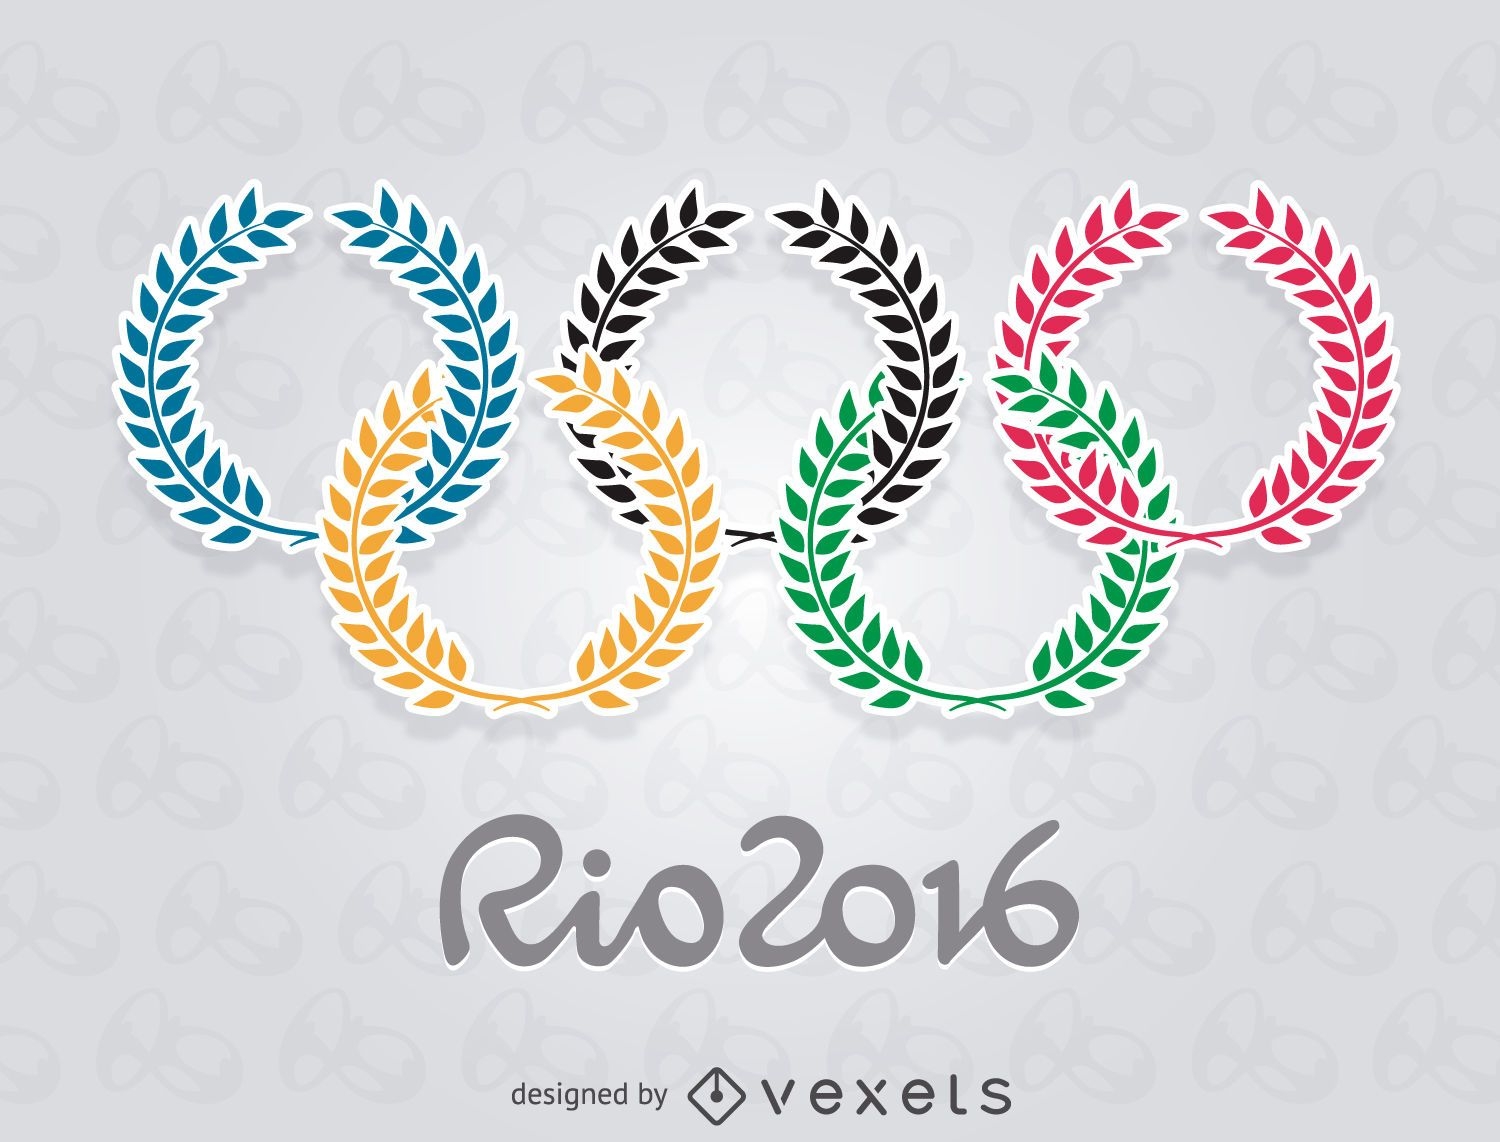 Olympische Spiele Rio 2016 - Olivenringe